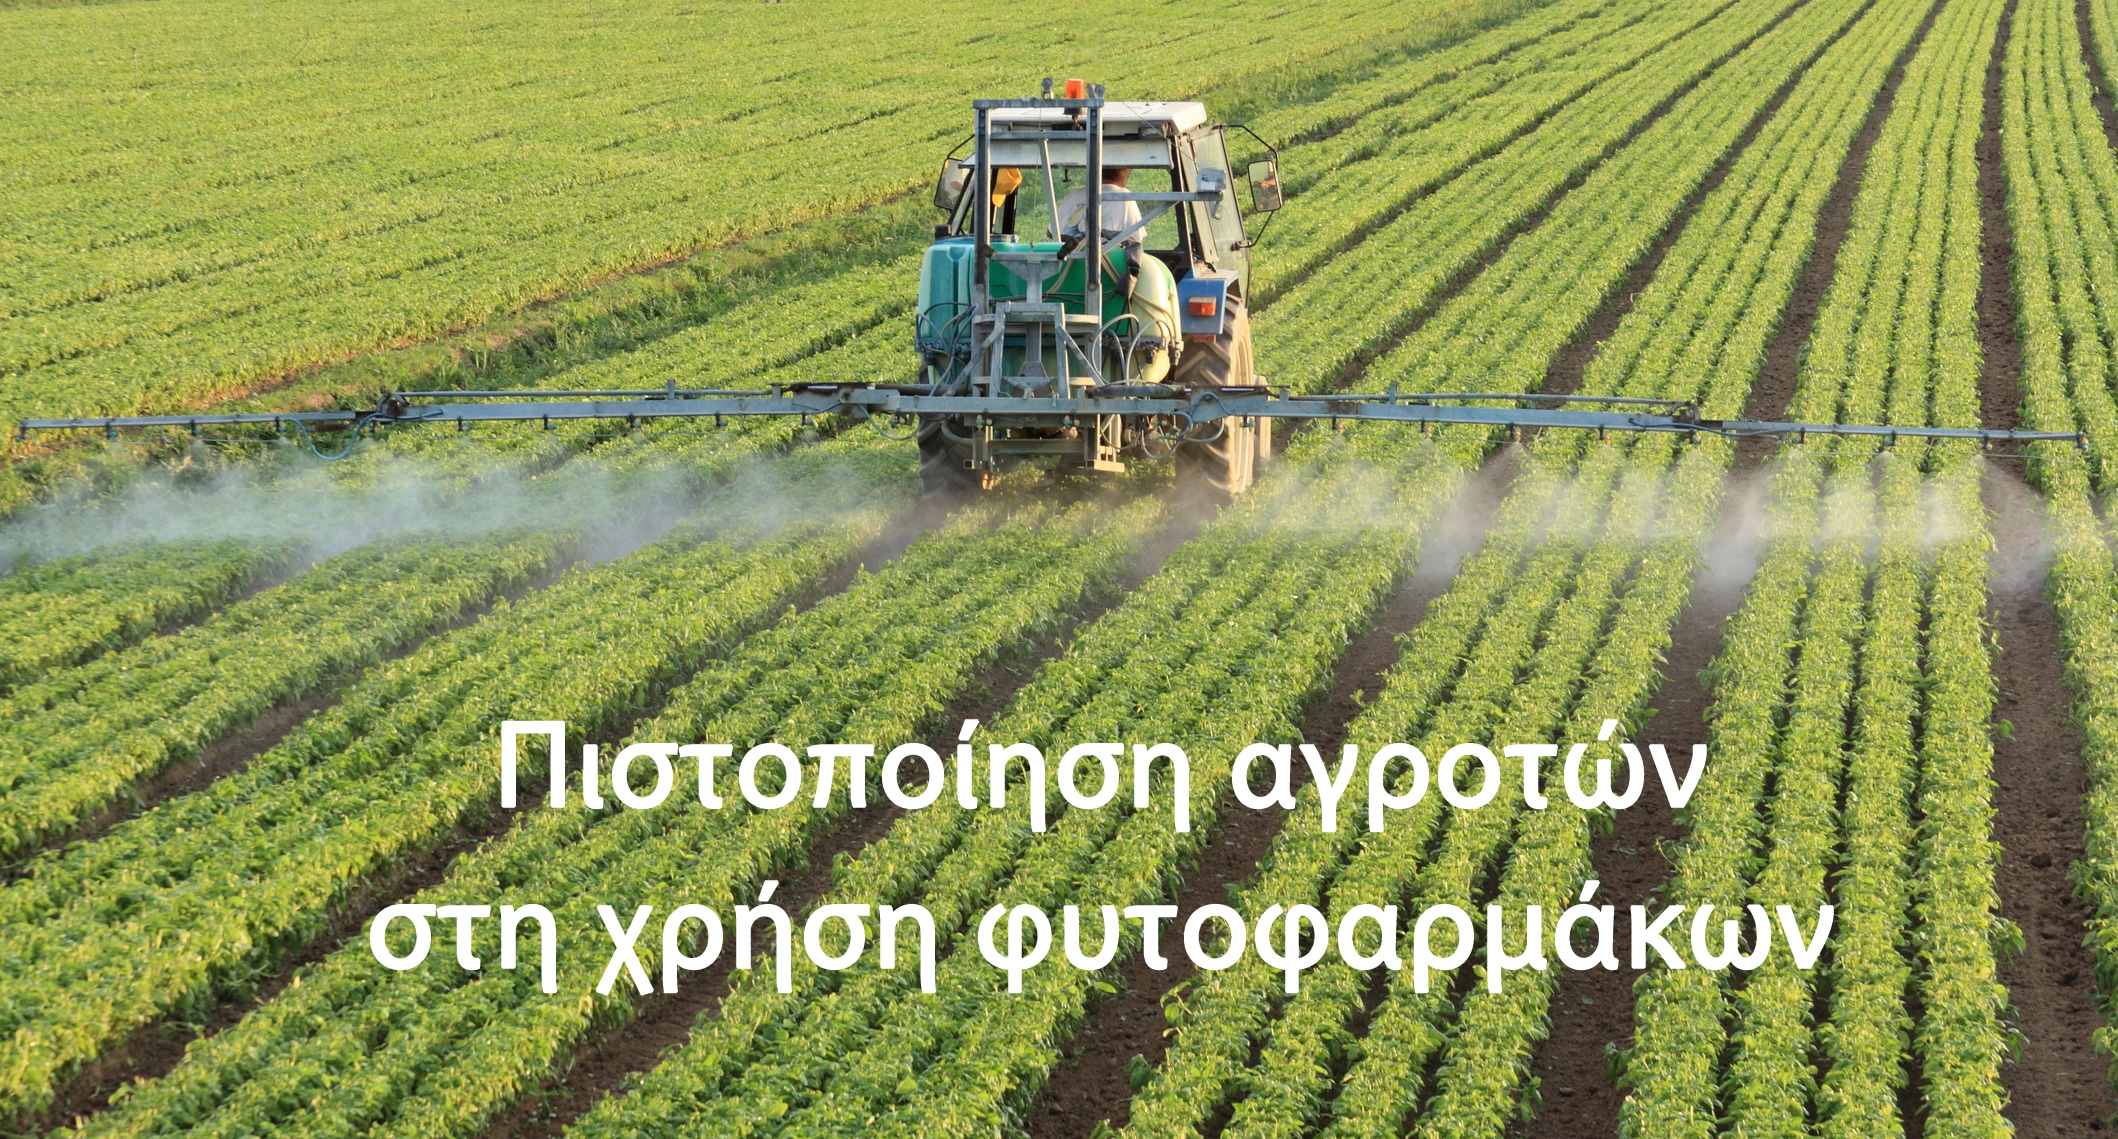 Πιστοποίηση αγροτών στην χρήση φυτοφαρμάκων